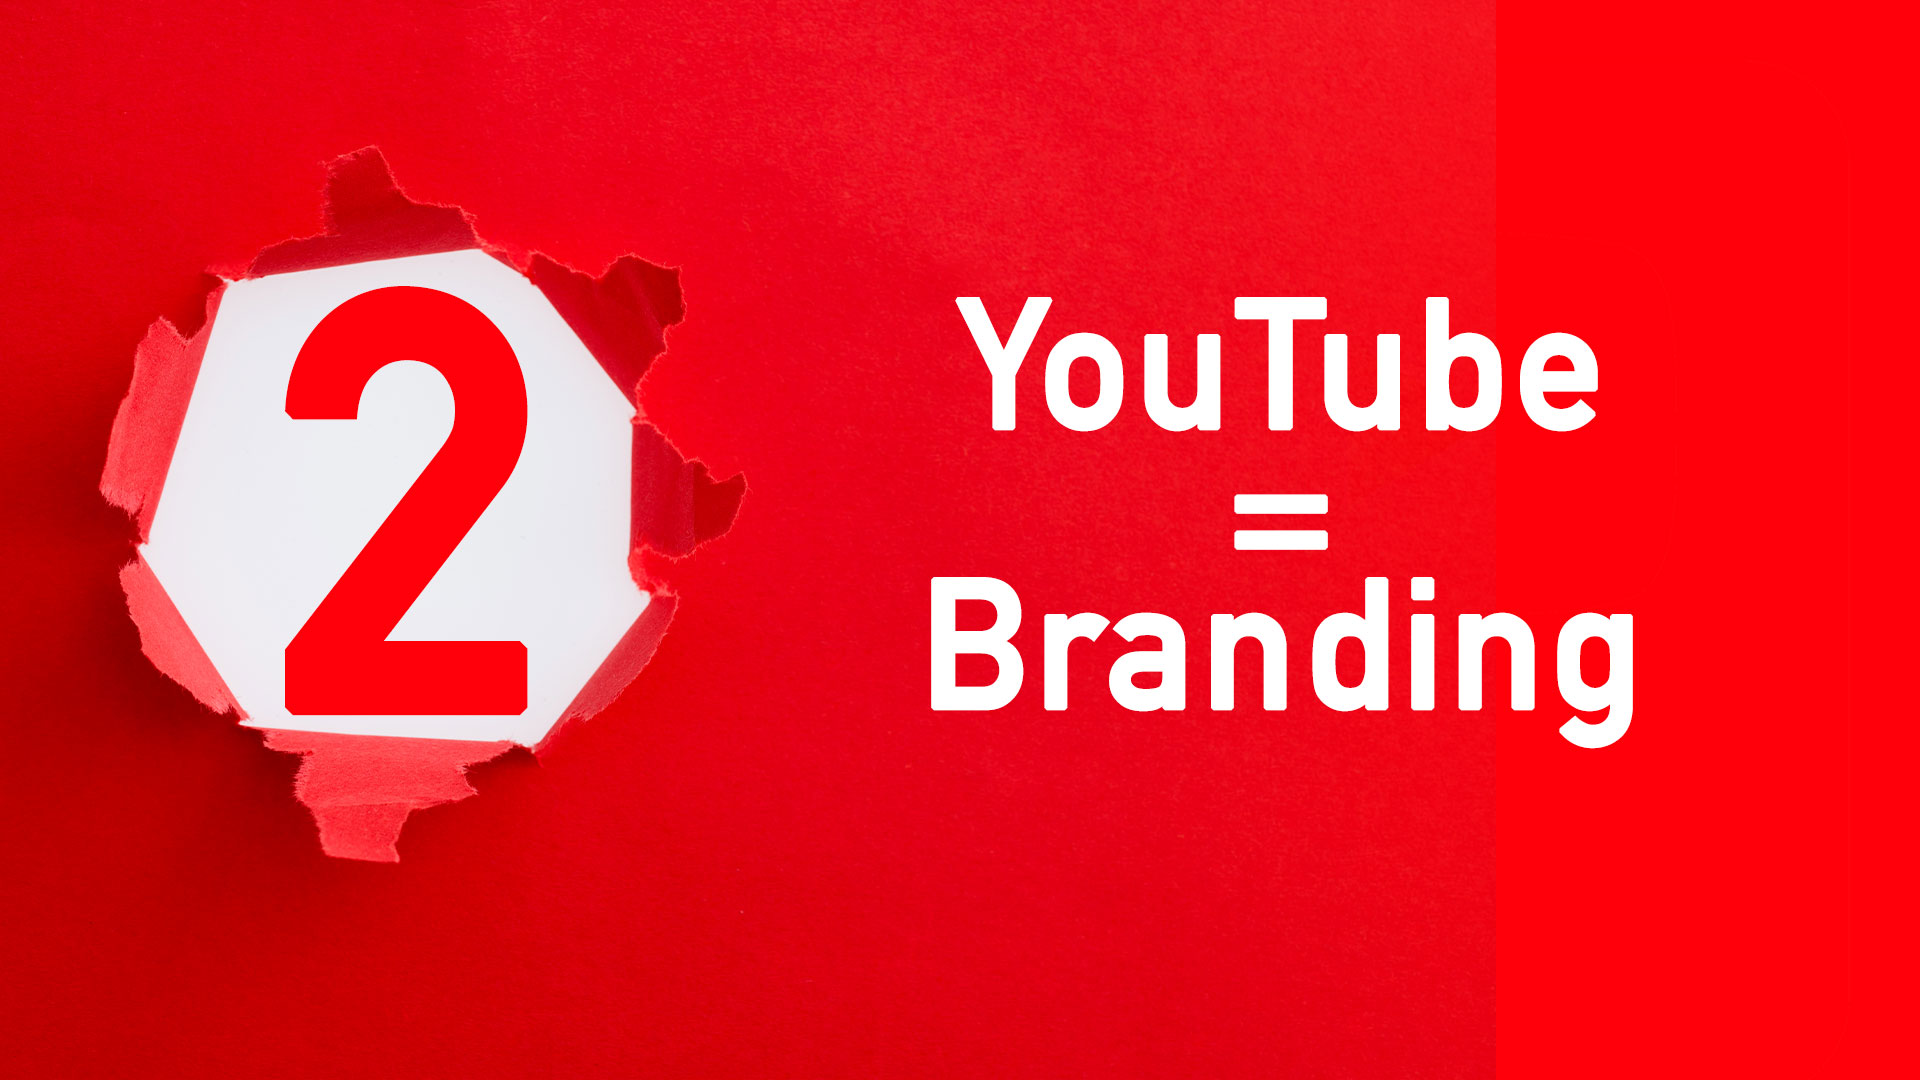 YouTube Videostrategie 2: YouTube = Branding.